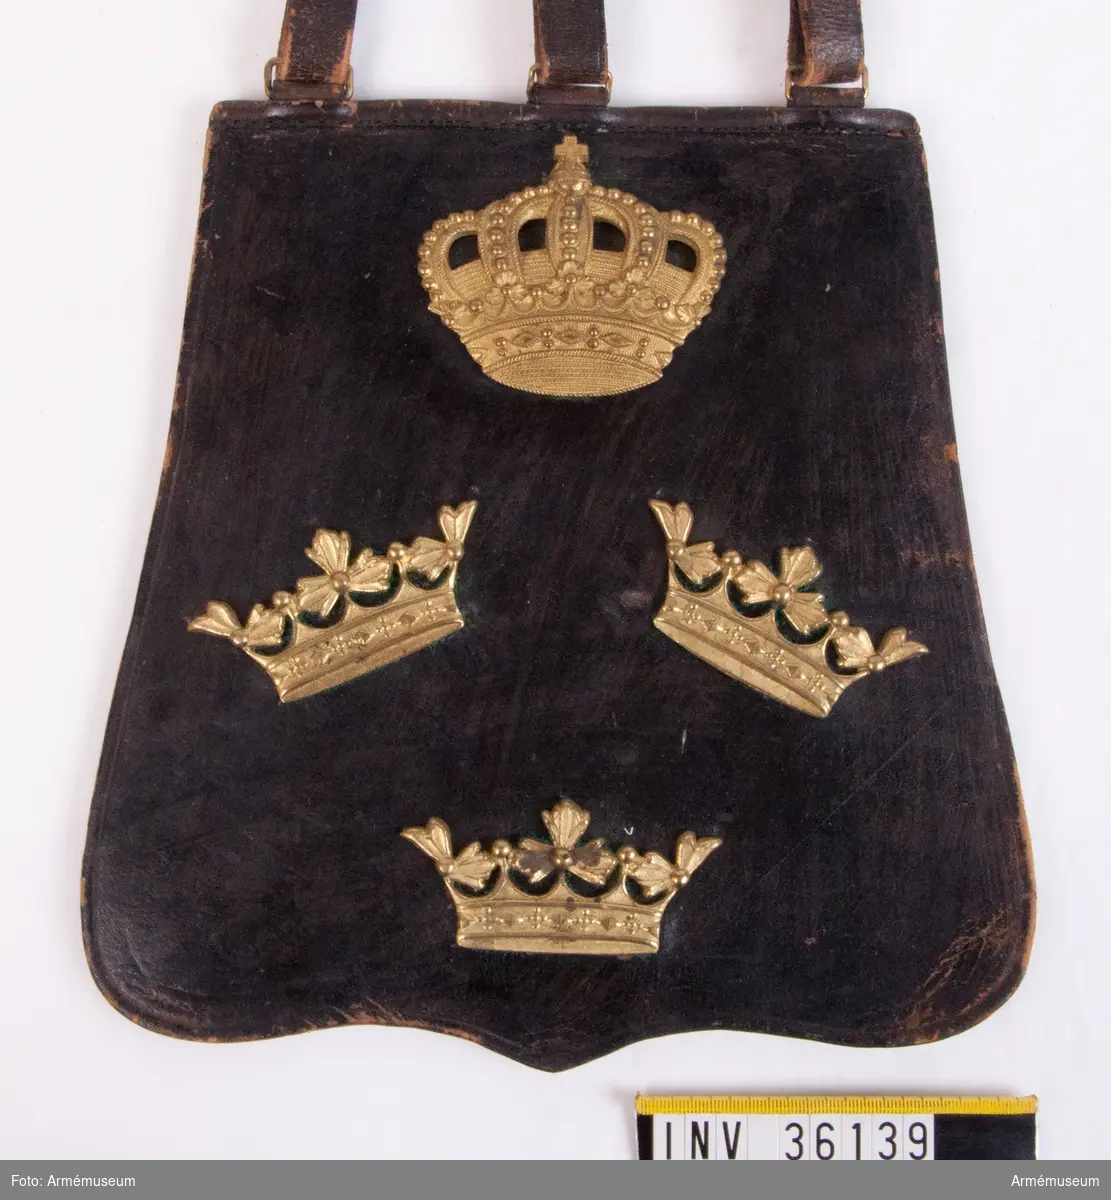 Grupp C I.
Sabeltaska av svart läder med tre kronor under en kunglig krona.